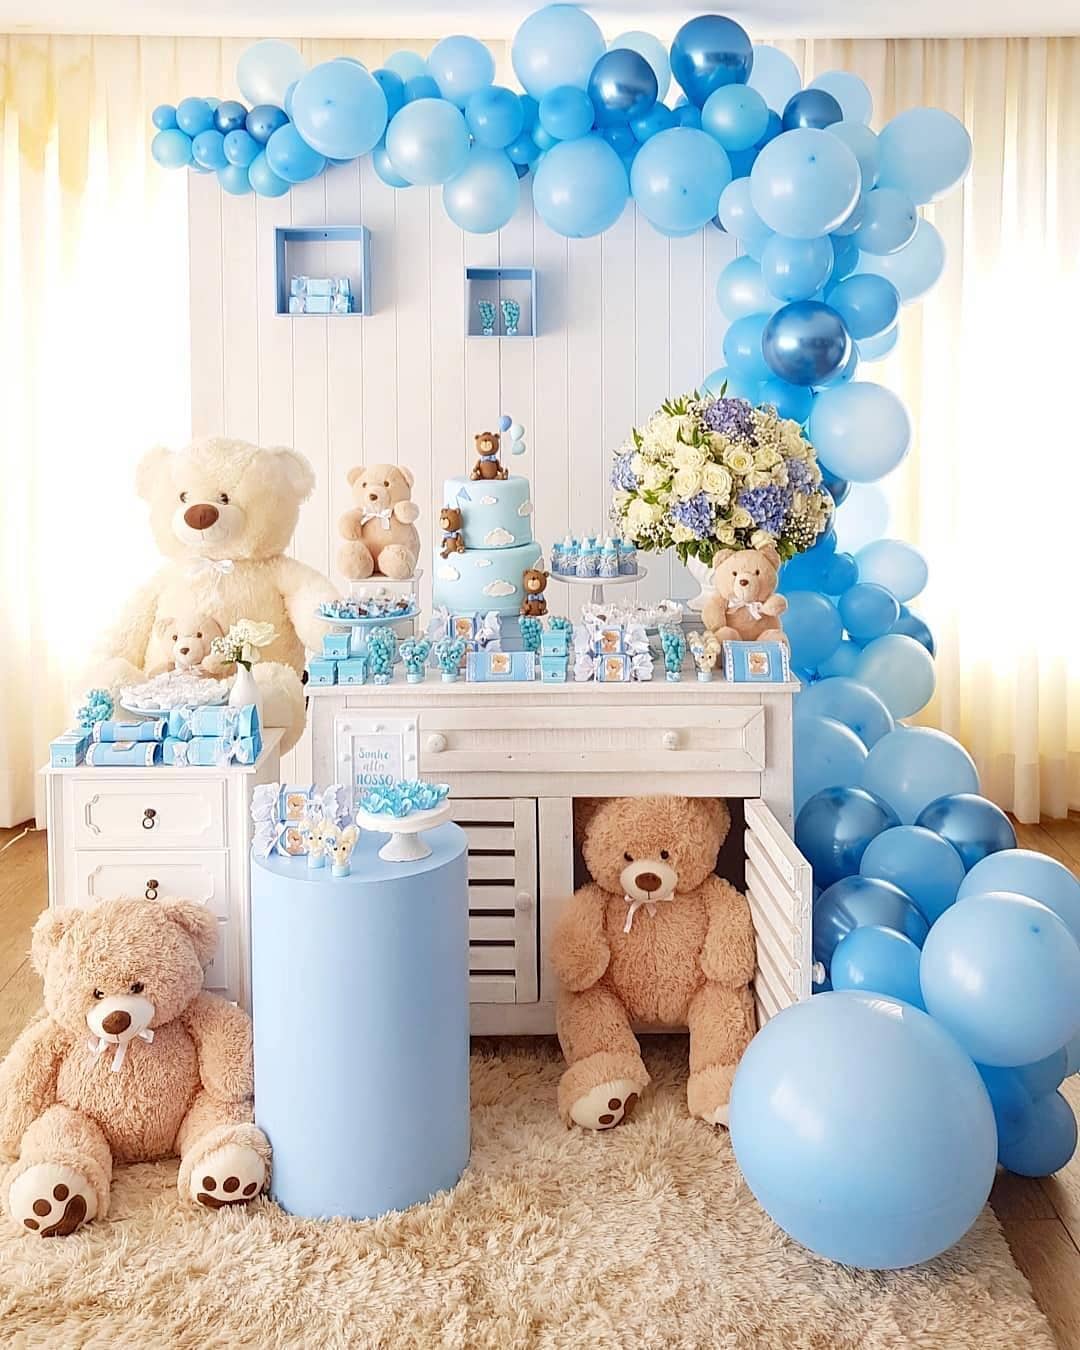 украшаем комнату на день рождения ребенка 1 год